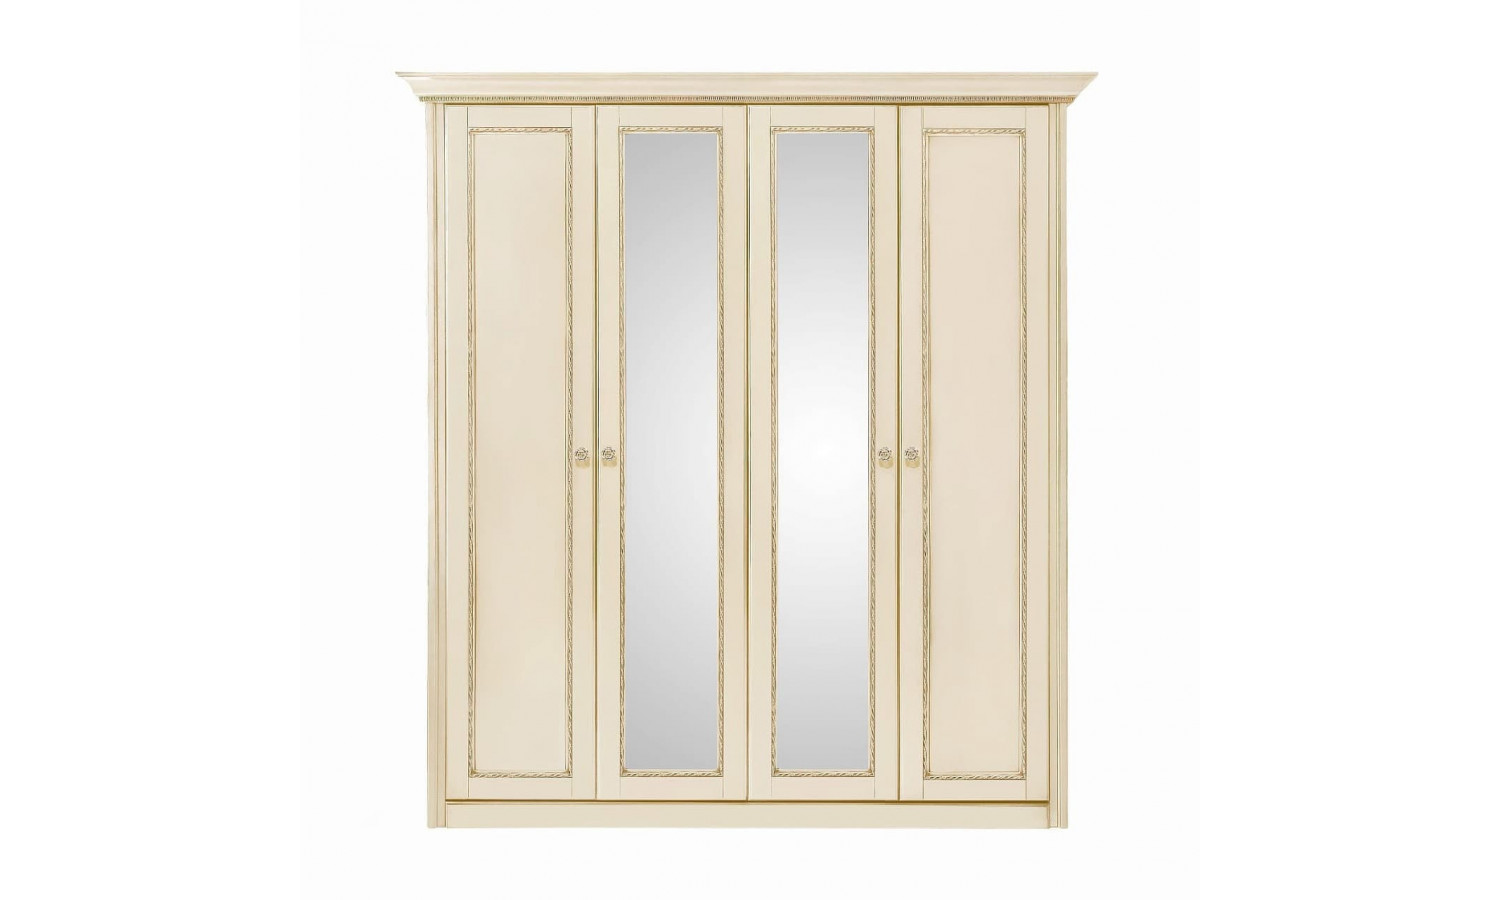 Шкаф 4 дверный с зеркалами Палермо Ваниль/Патина Золото со структрой дерева